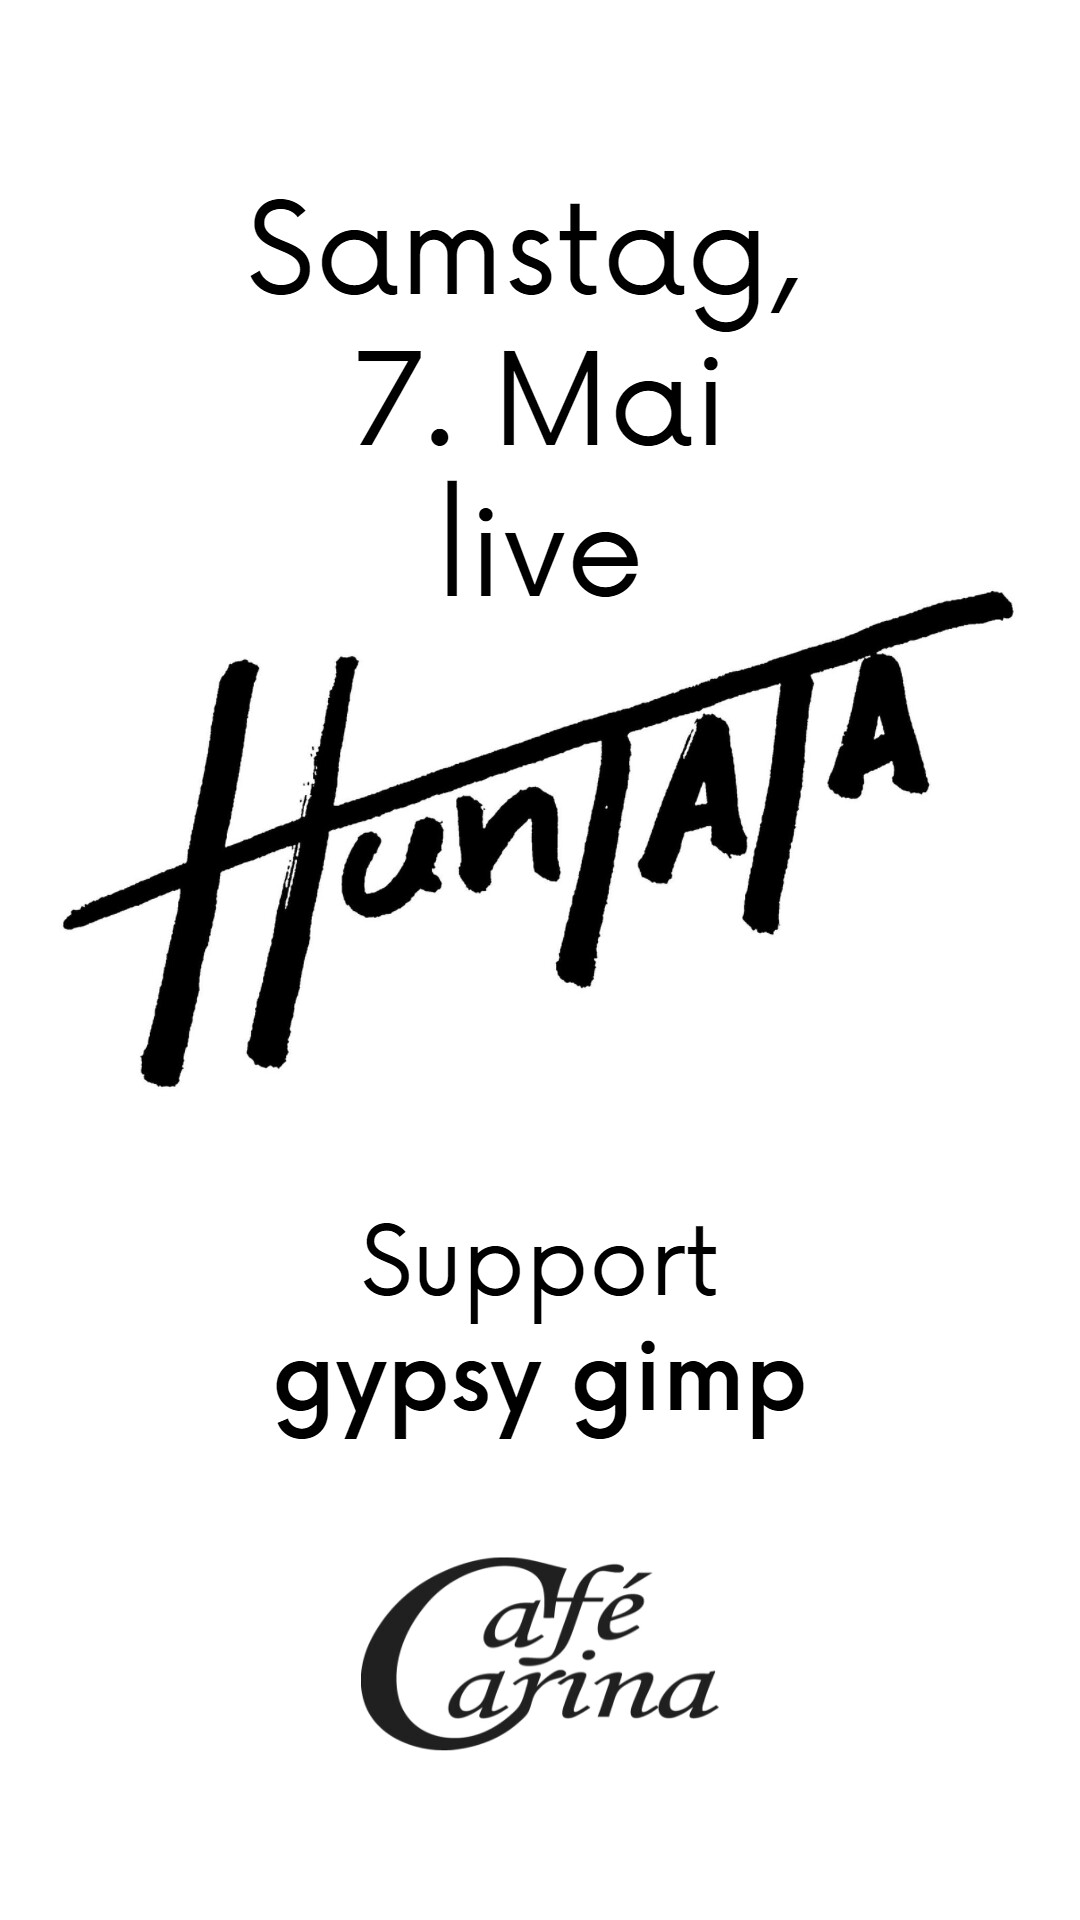 huntata / gypsy gimp